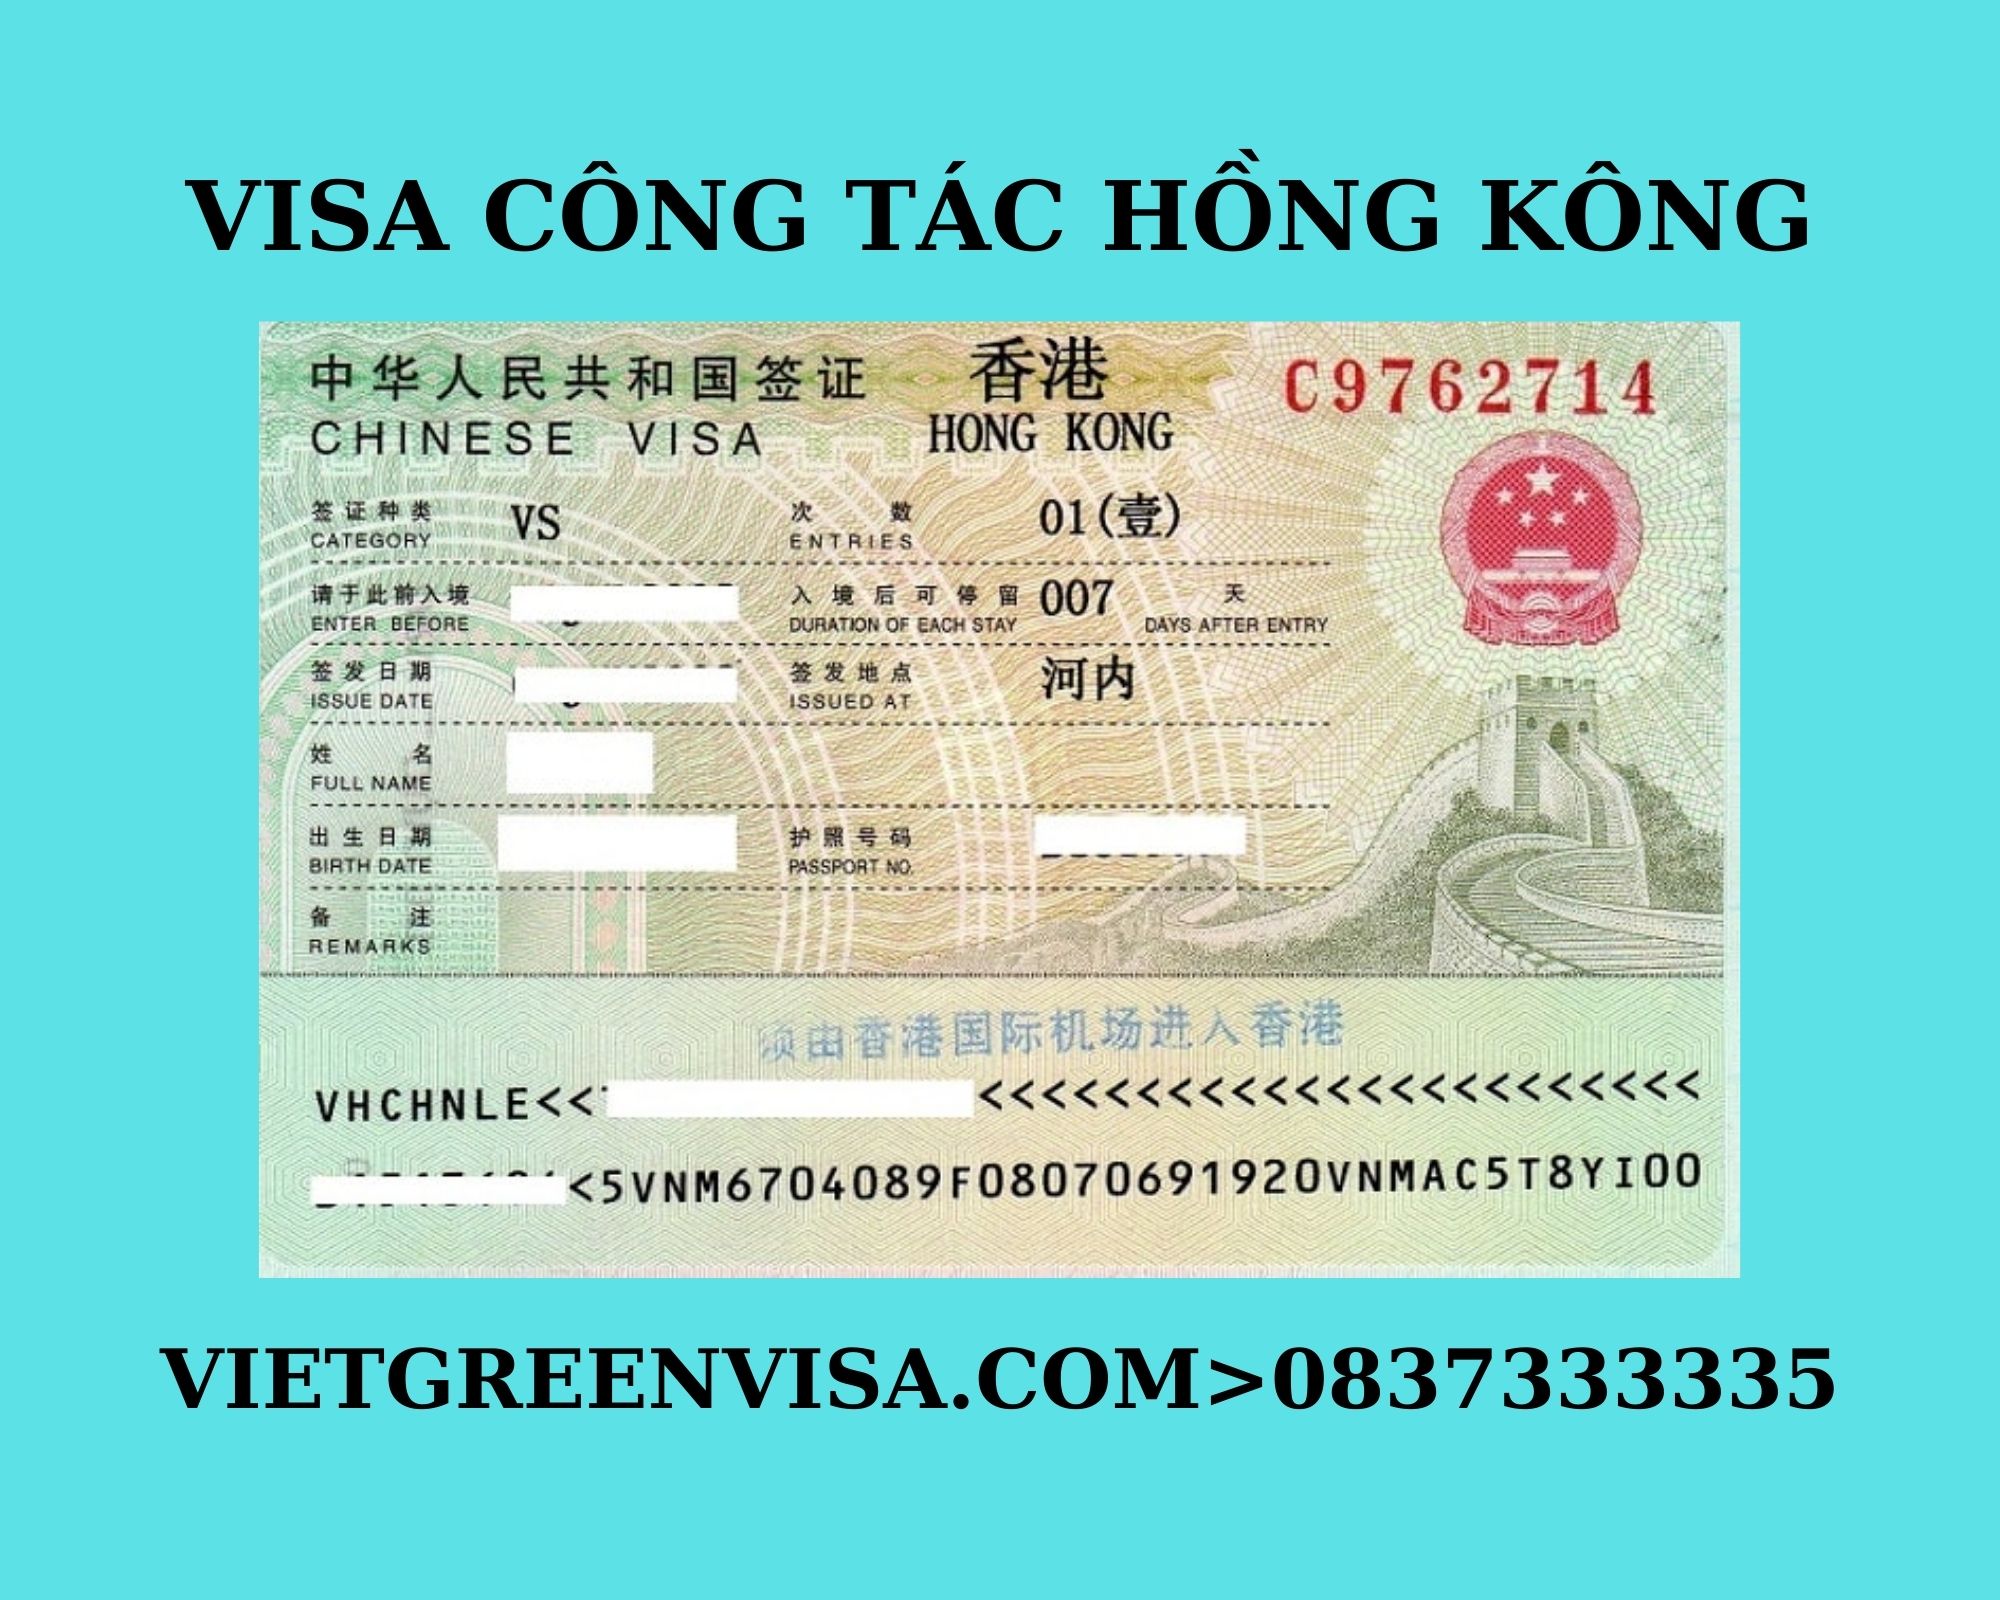 Dịch vụ xin visa công tác Hồng Kông uy tín, Làm visa công tác đi Hồng Kông, Thủ tục xin visa Hồng Kông công tác, visa đi Hồng Kông công tác